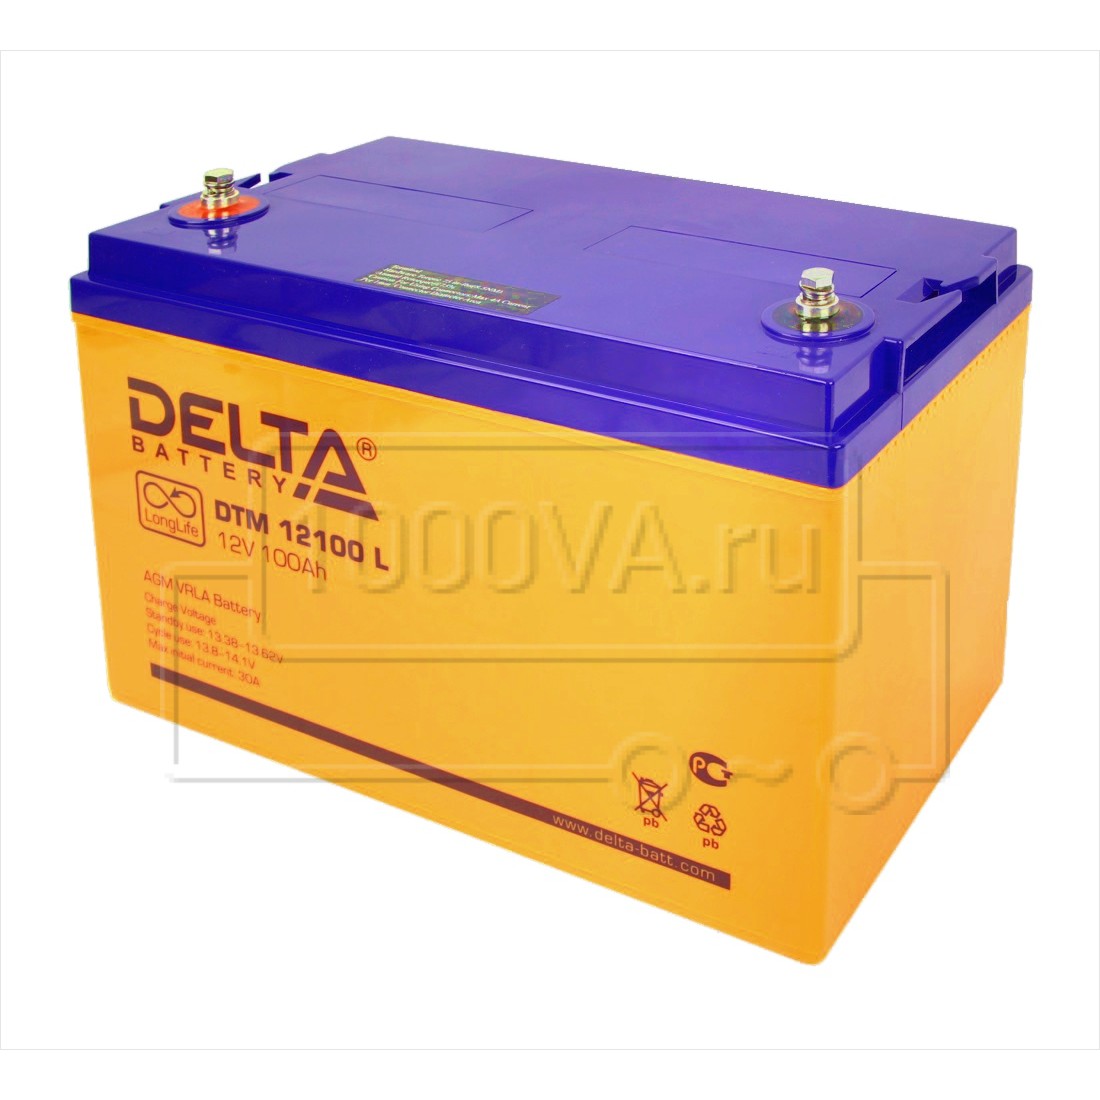 Аккумулятор Delta DTM 12100 L Опт/Розница. Доставка в регионы и по .